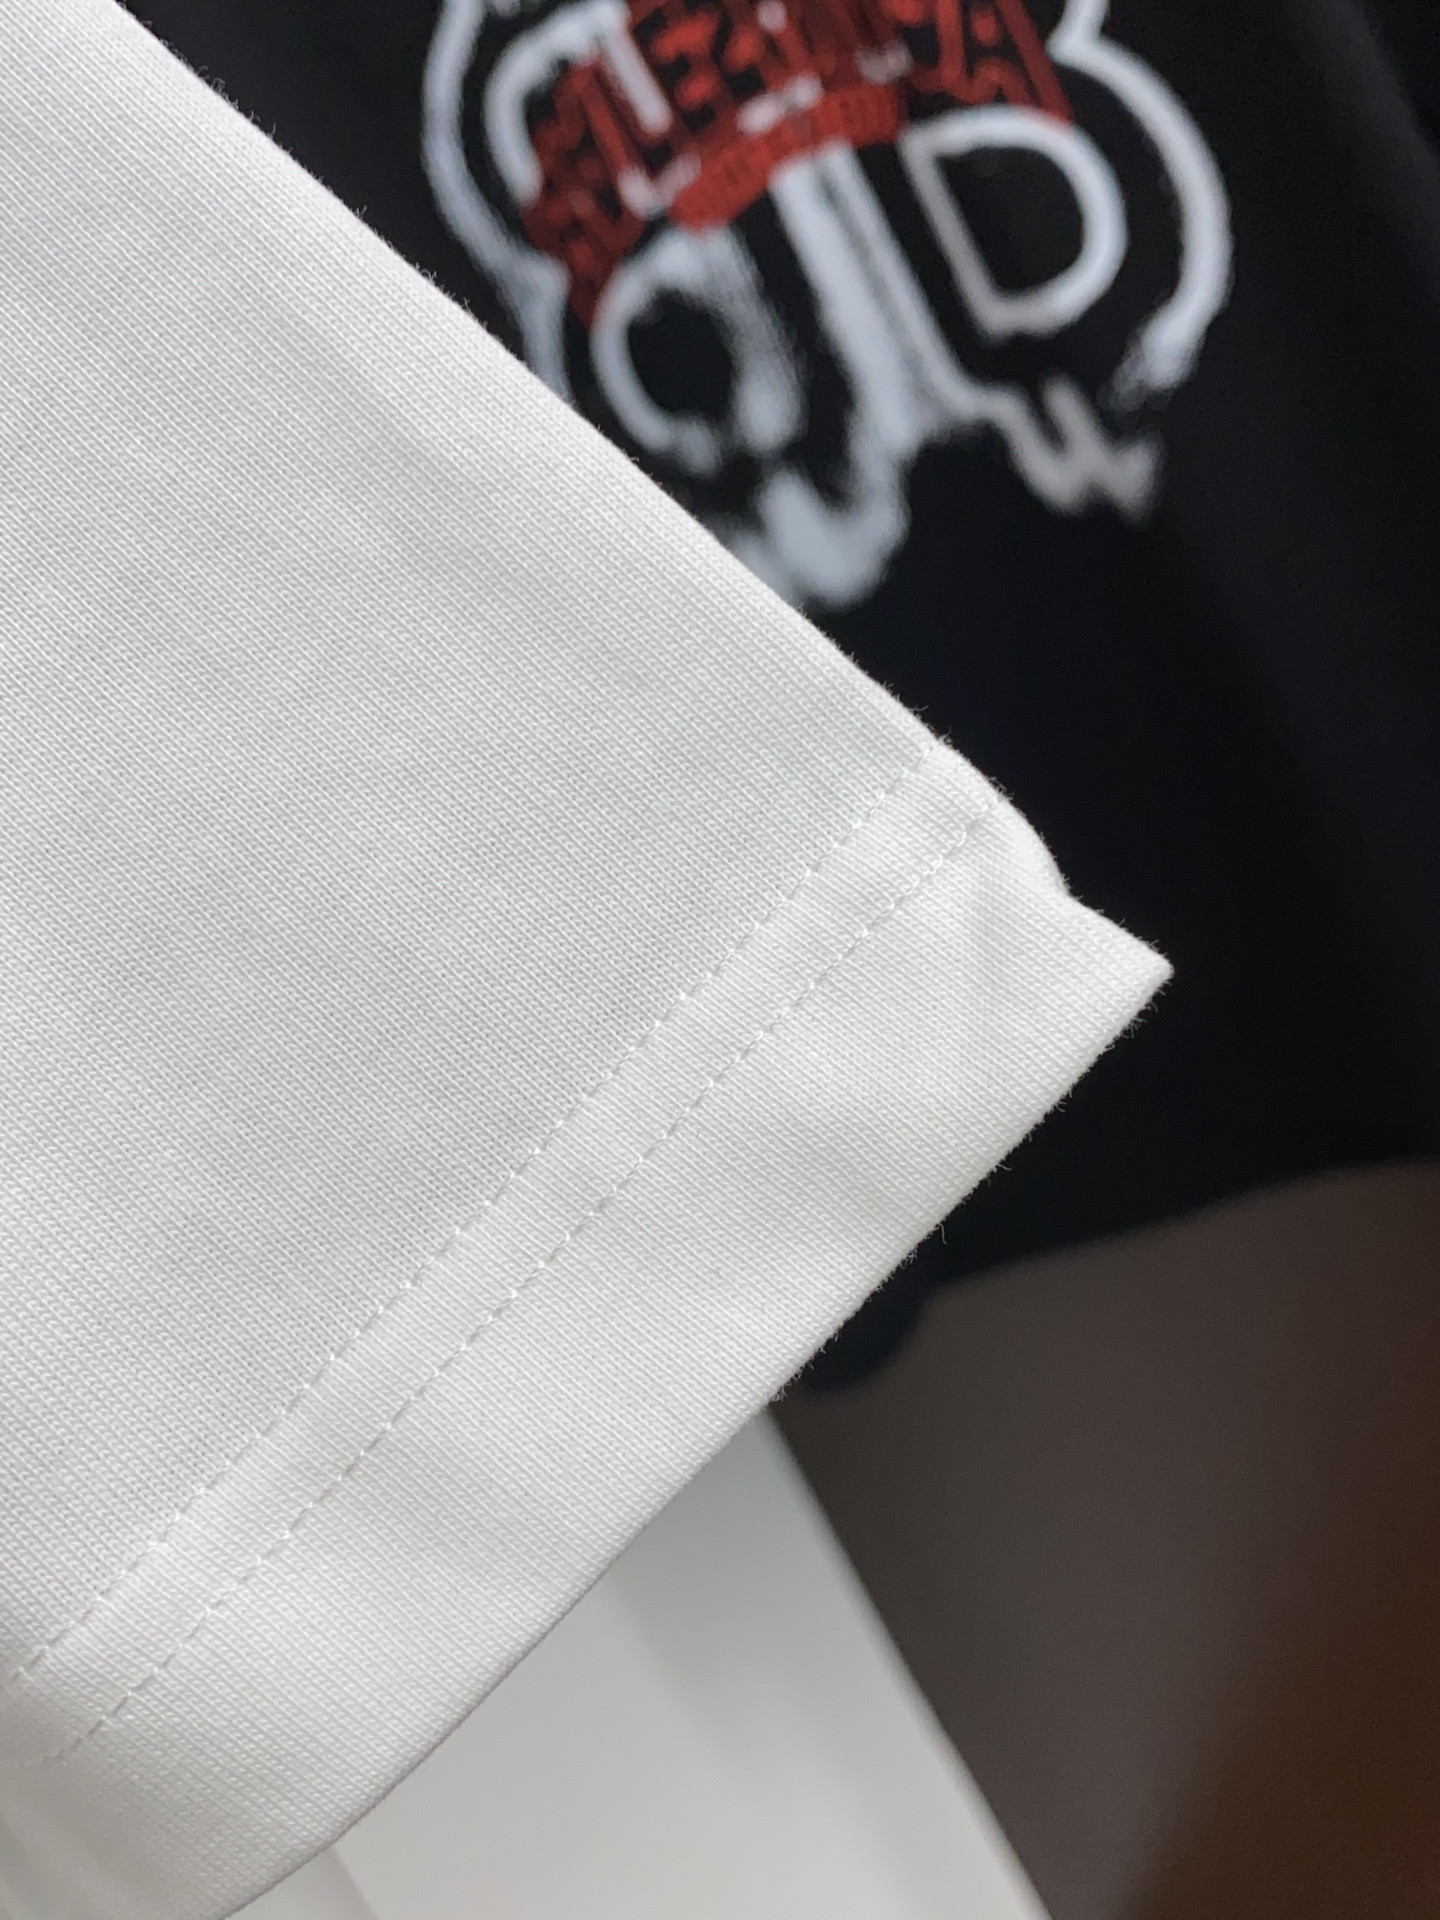 最新作 バレンシアガ アウトレット tシャツ 偽物 新作カップル用  柔らかいコットン素材_4